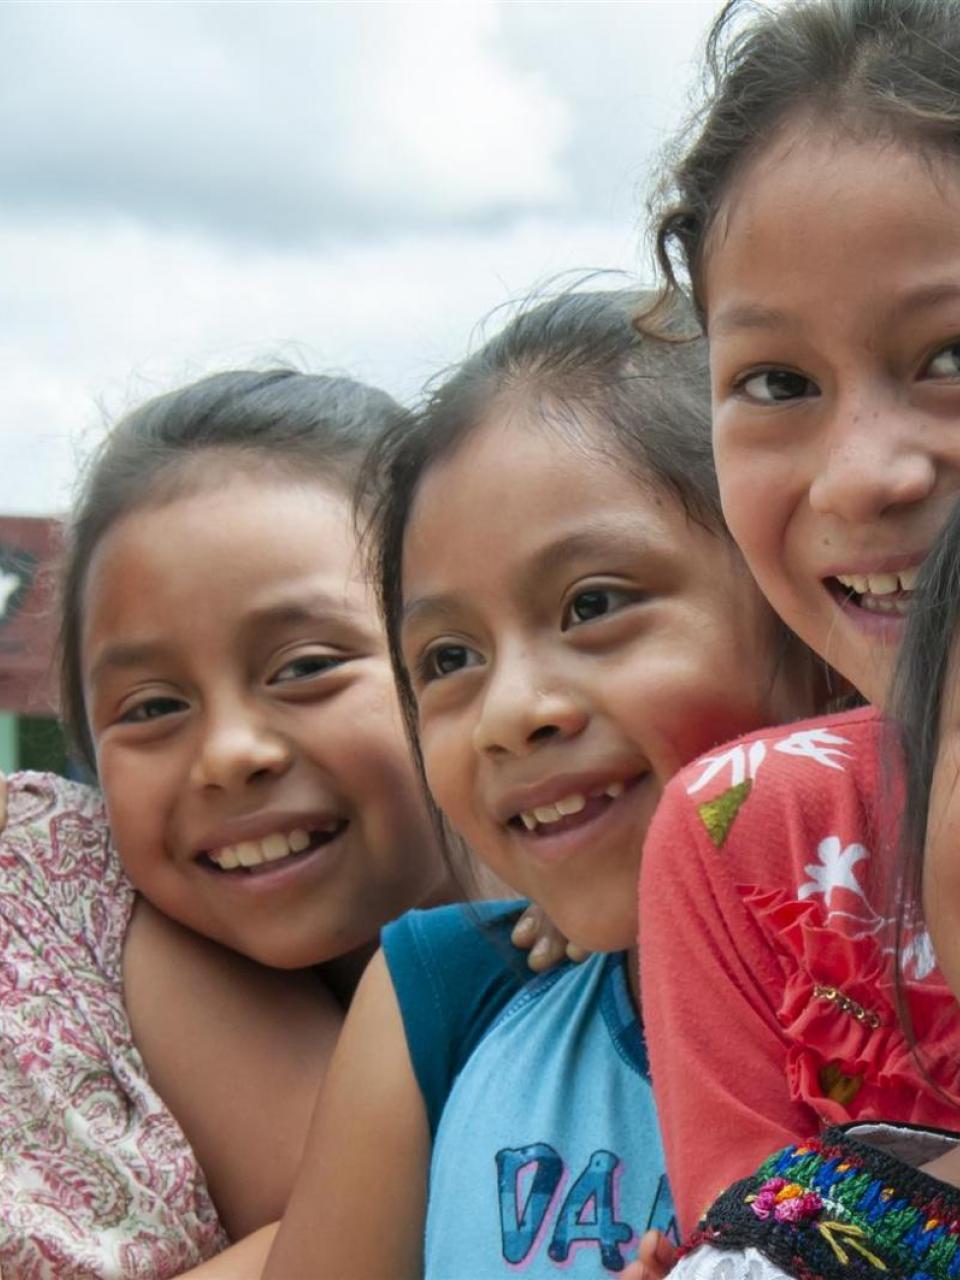 Cinq jeunes filles souriantes au Guatemala